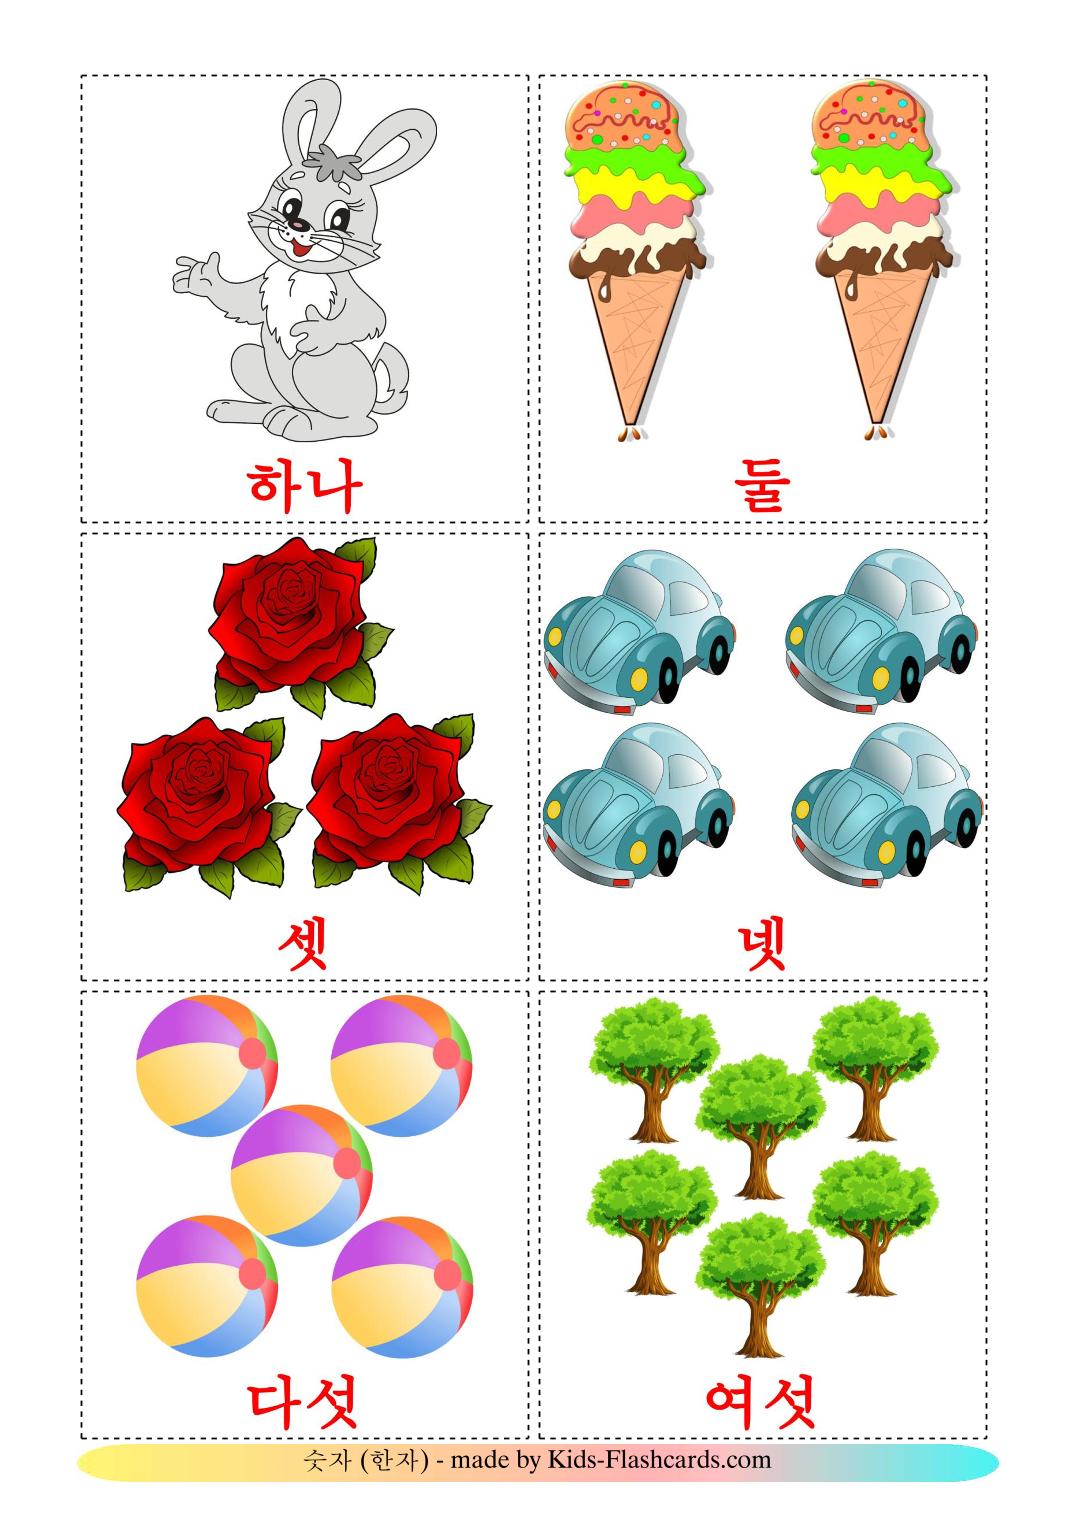 Compter - 10 Flashcards coréen imprimables gratuitement